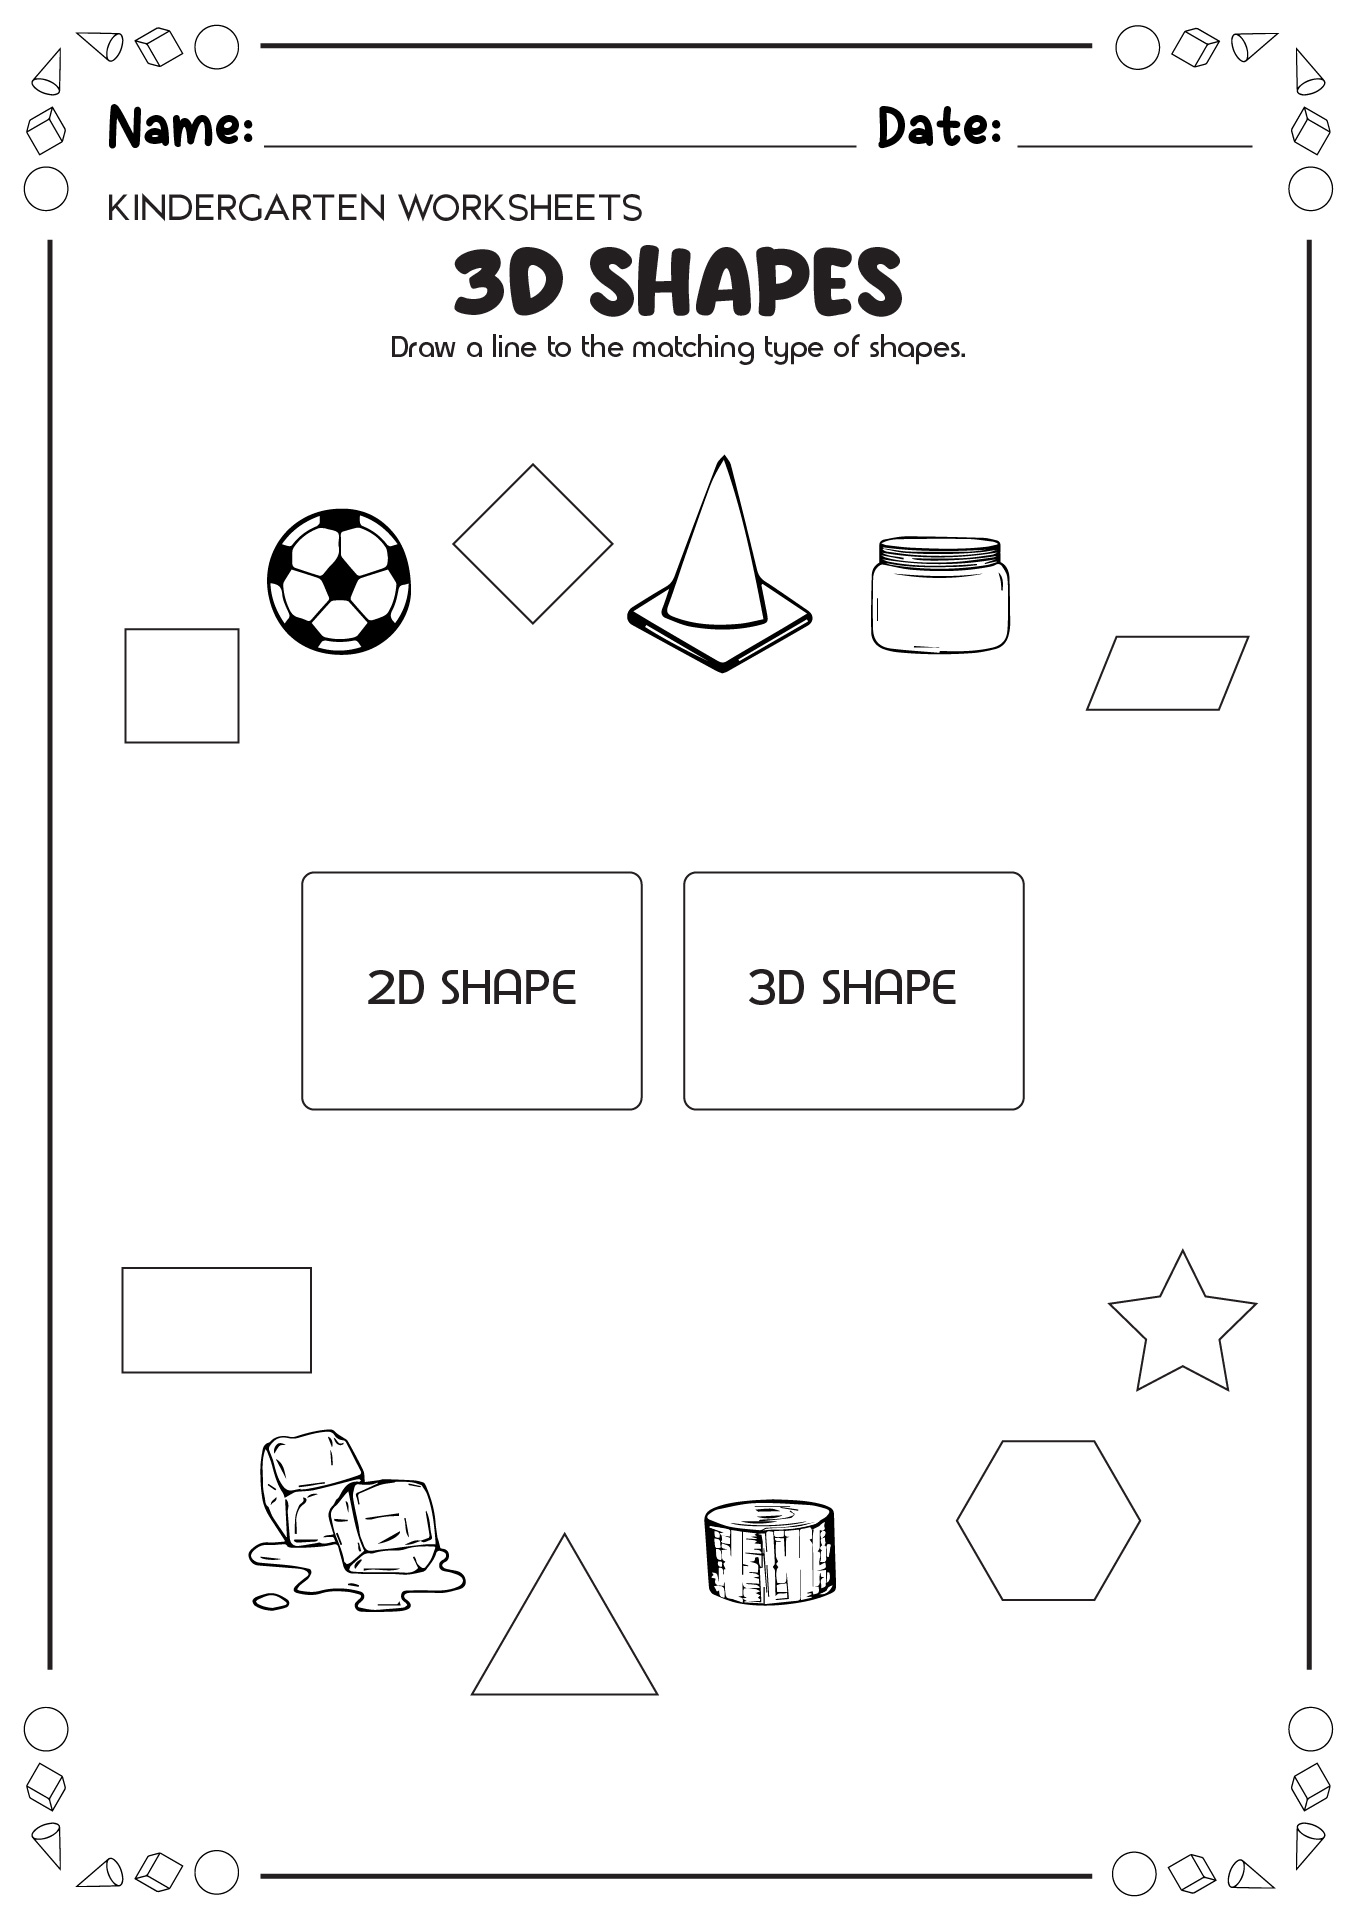 3D Shapes Worksheet Kindergarten Image